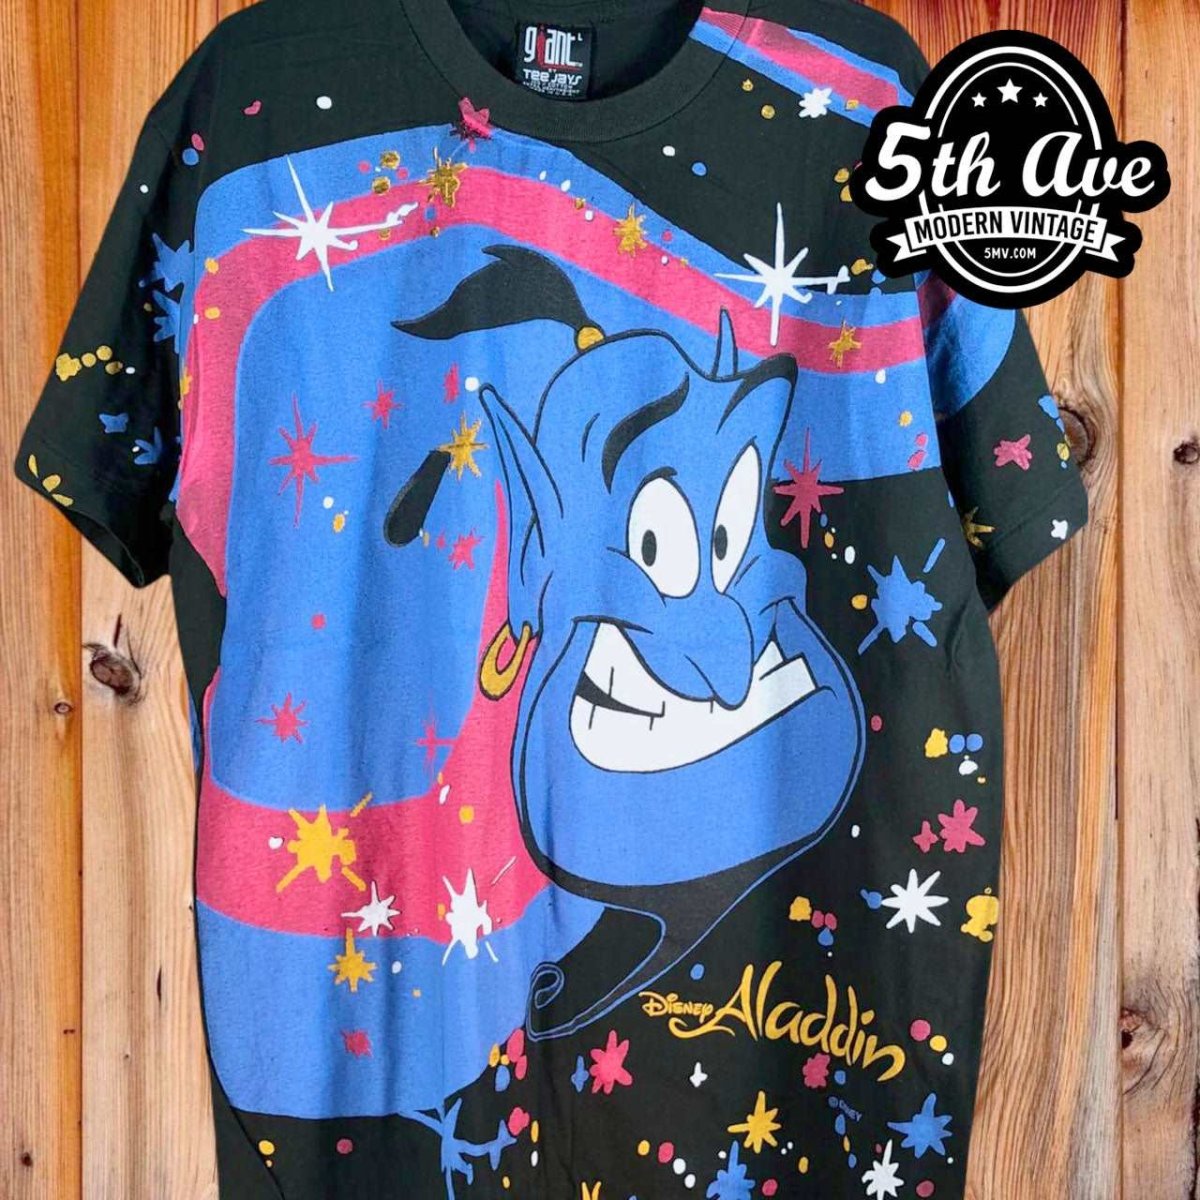 Disney Aladdin Genie Tシャツ vintage 90sかなり高騰しましたね